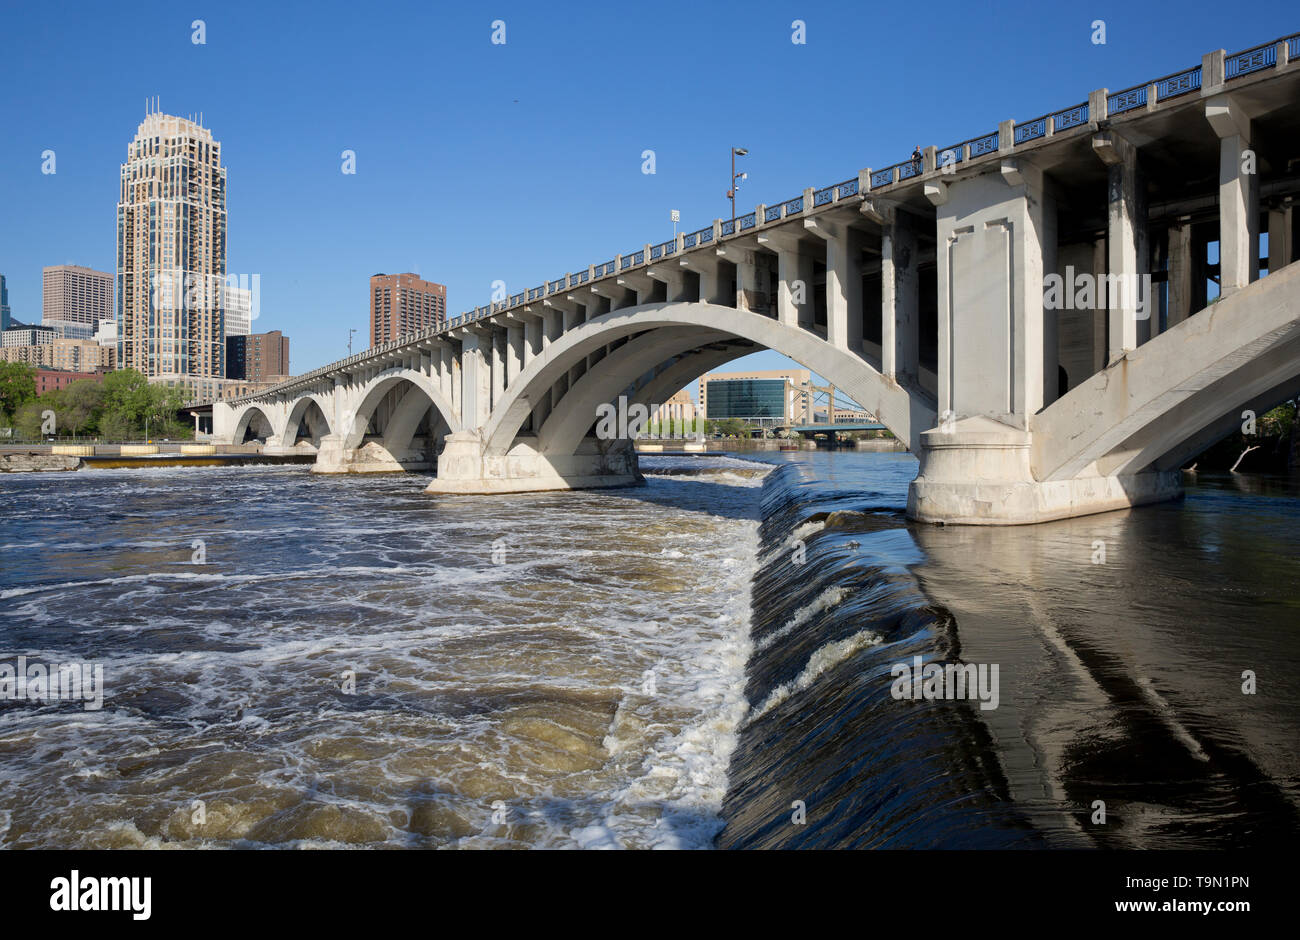 Dettaglio della Terza Avenue ponte che attraversa il fiume Mississippi nel centro di Minneapolis, Minnesota. Il ponte è stato progettato da Frederick W. Cappelen Foto Stock